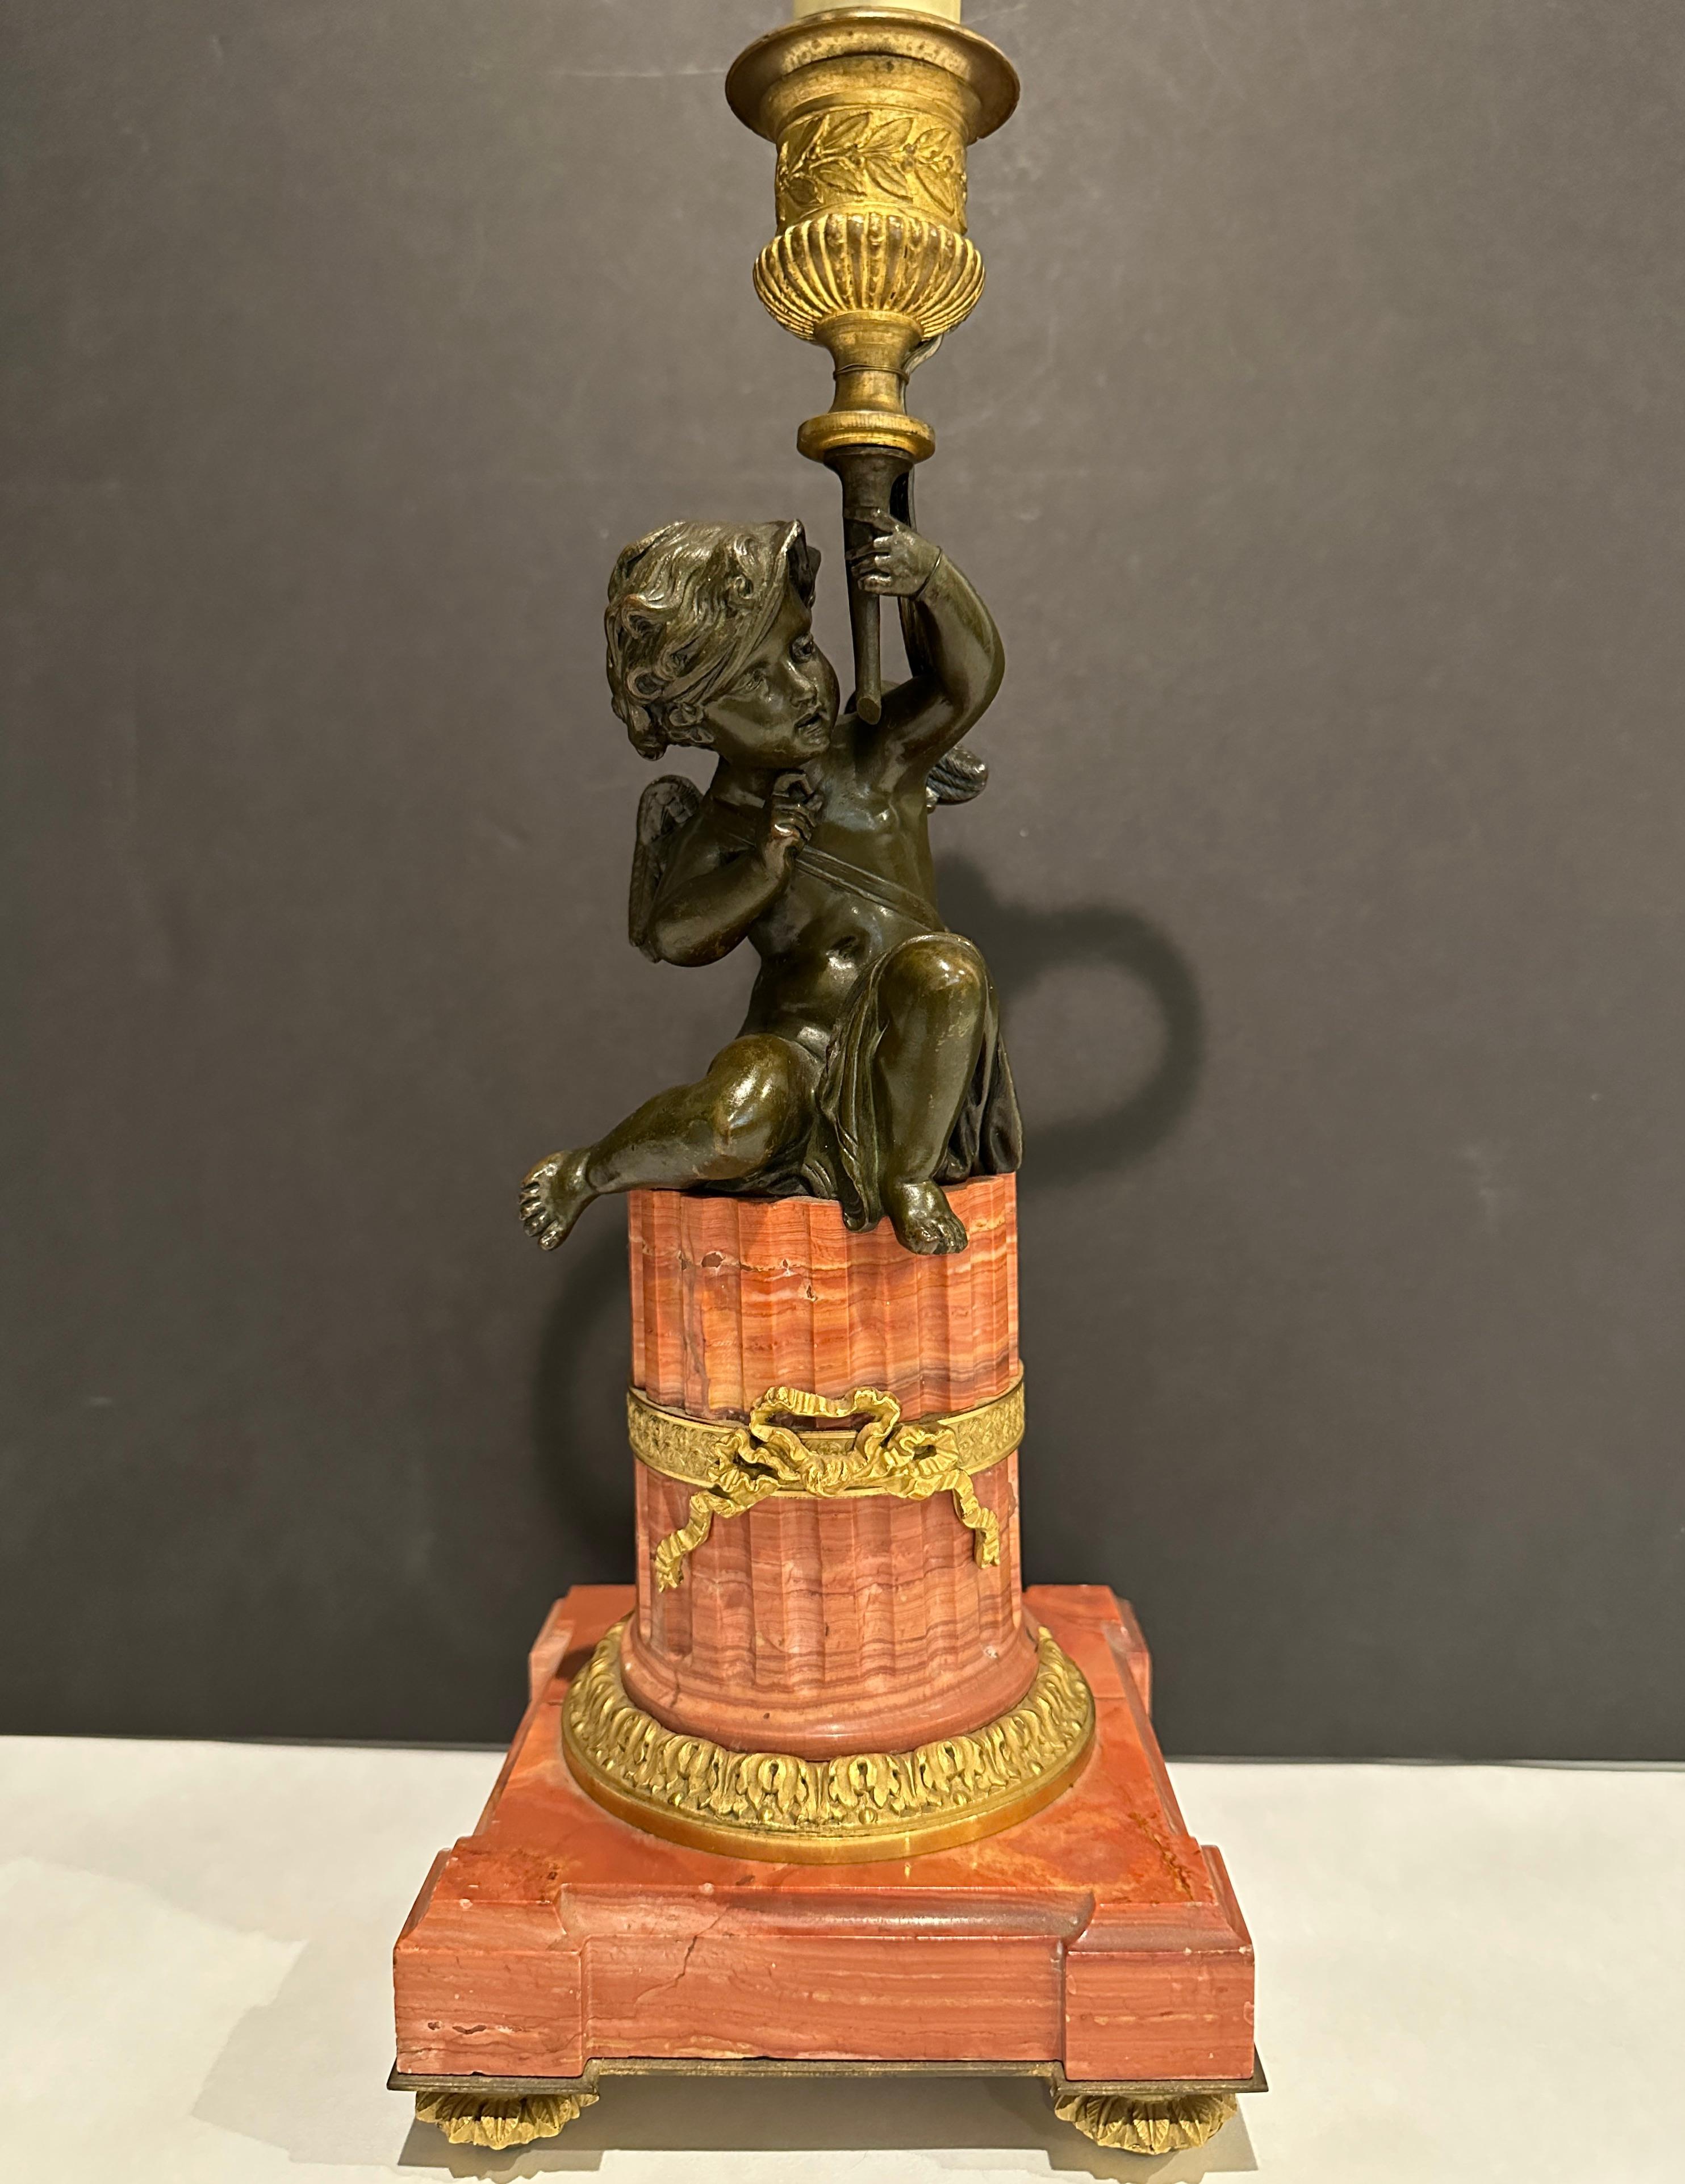 Garniture du XIXe siècle finement ciselée et modelée, montée en lampe. Cupidon ailé magnifiquement patiné tenant une coupe au-dessus de sa tête, comme si une torche était levée.  sur un socle en marbre cannelé monté en bronze doré.  Anneau en forme